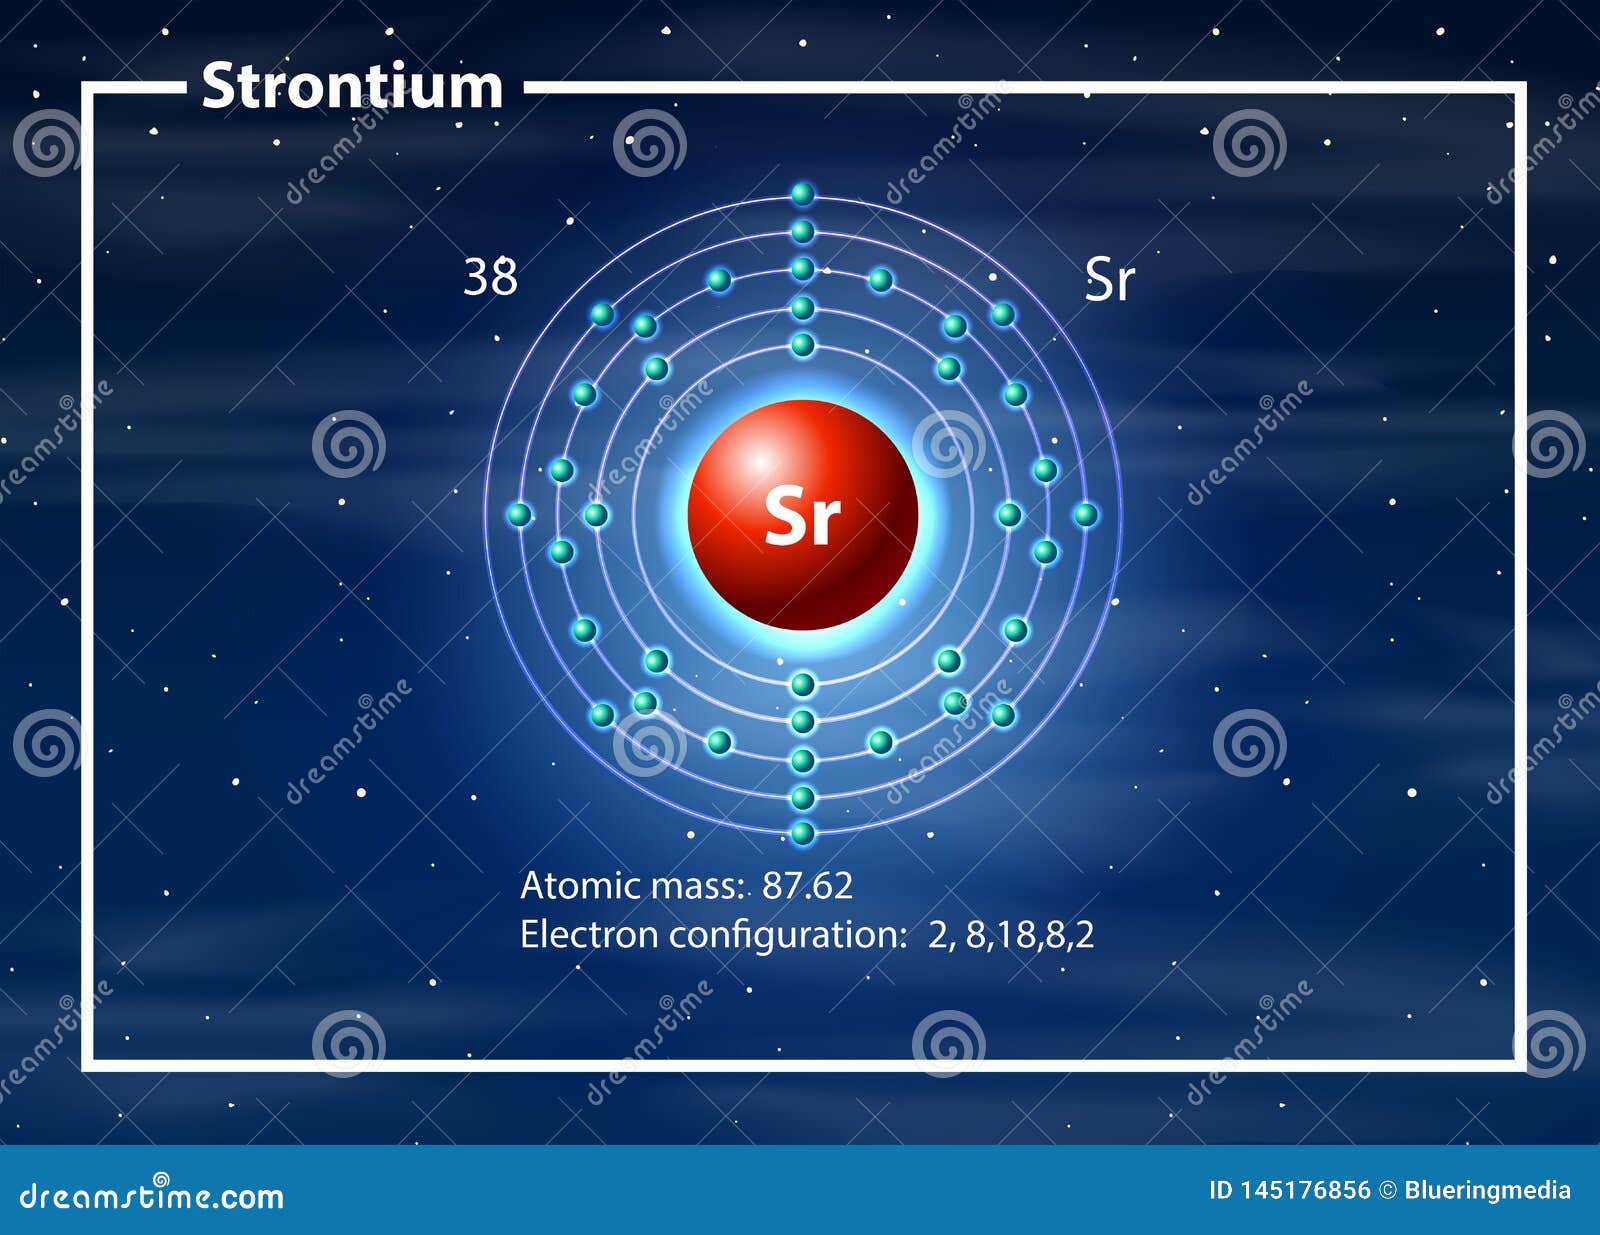 Strontium Atom Models